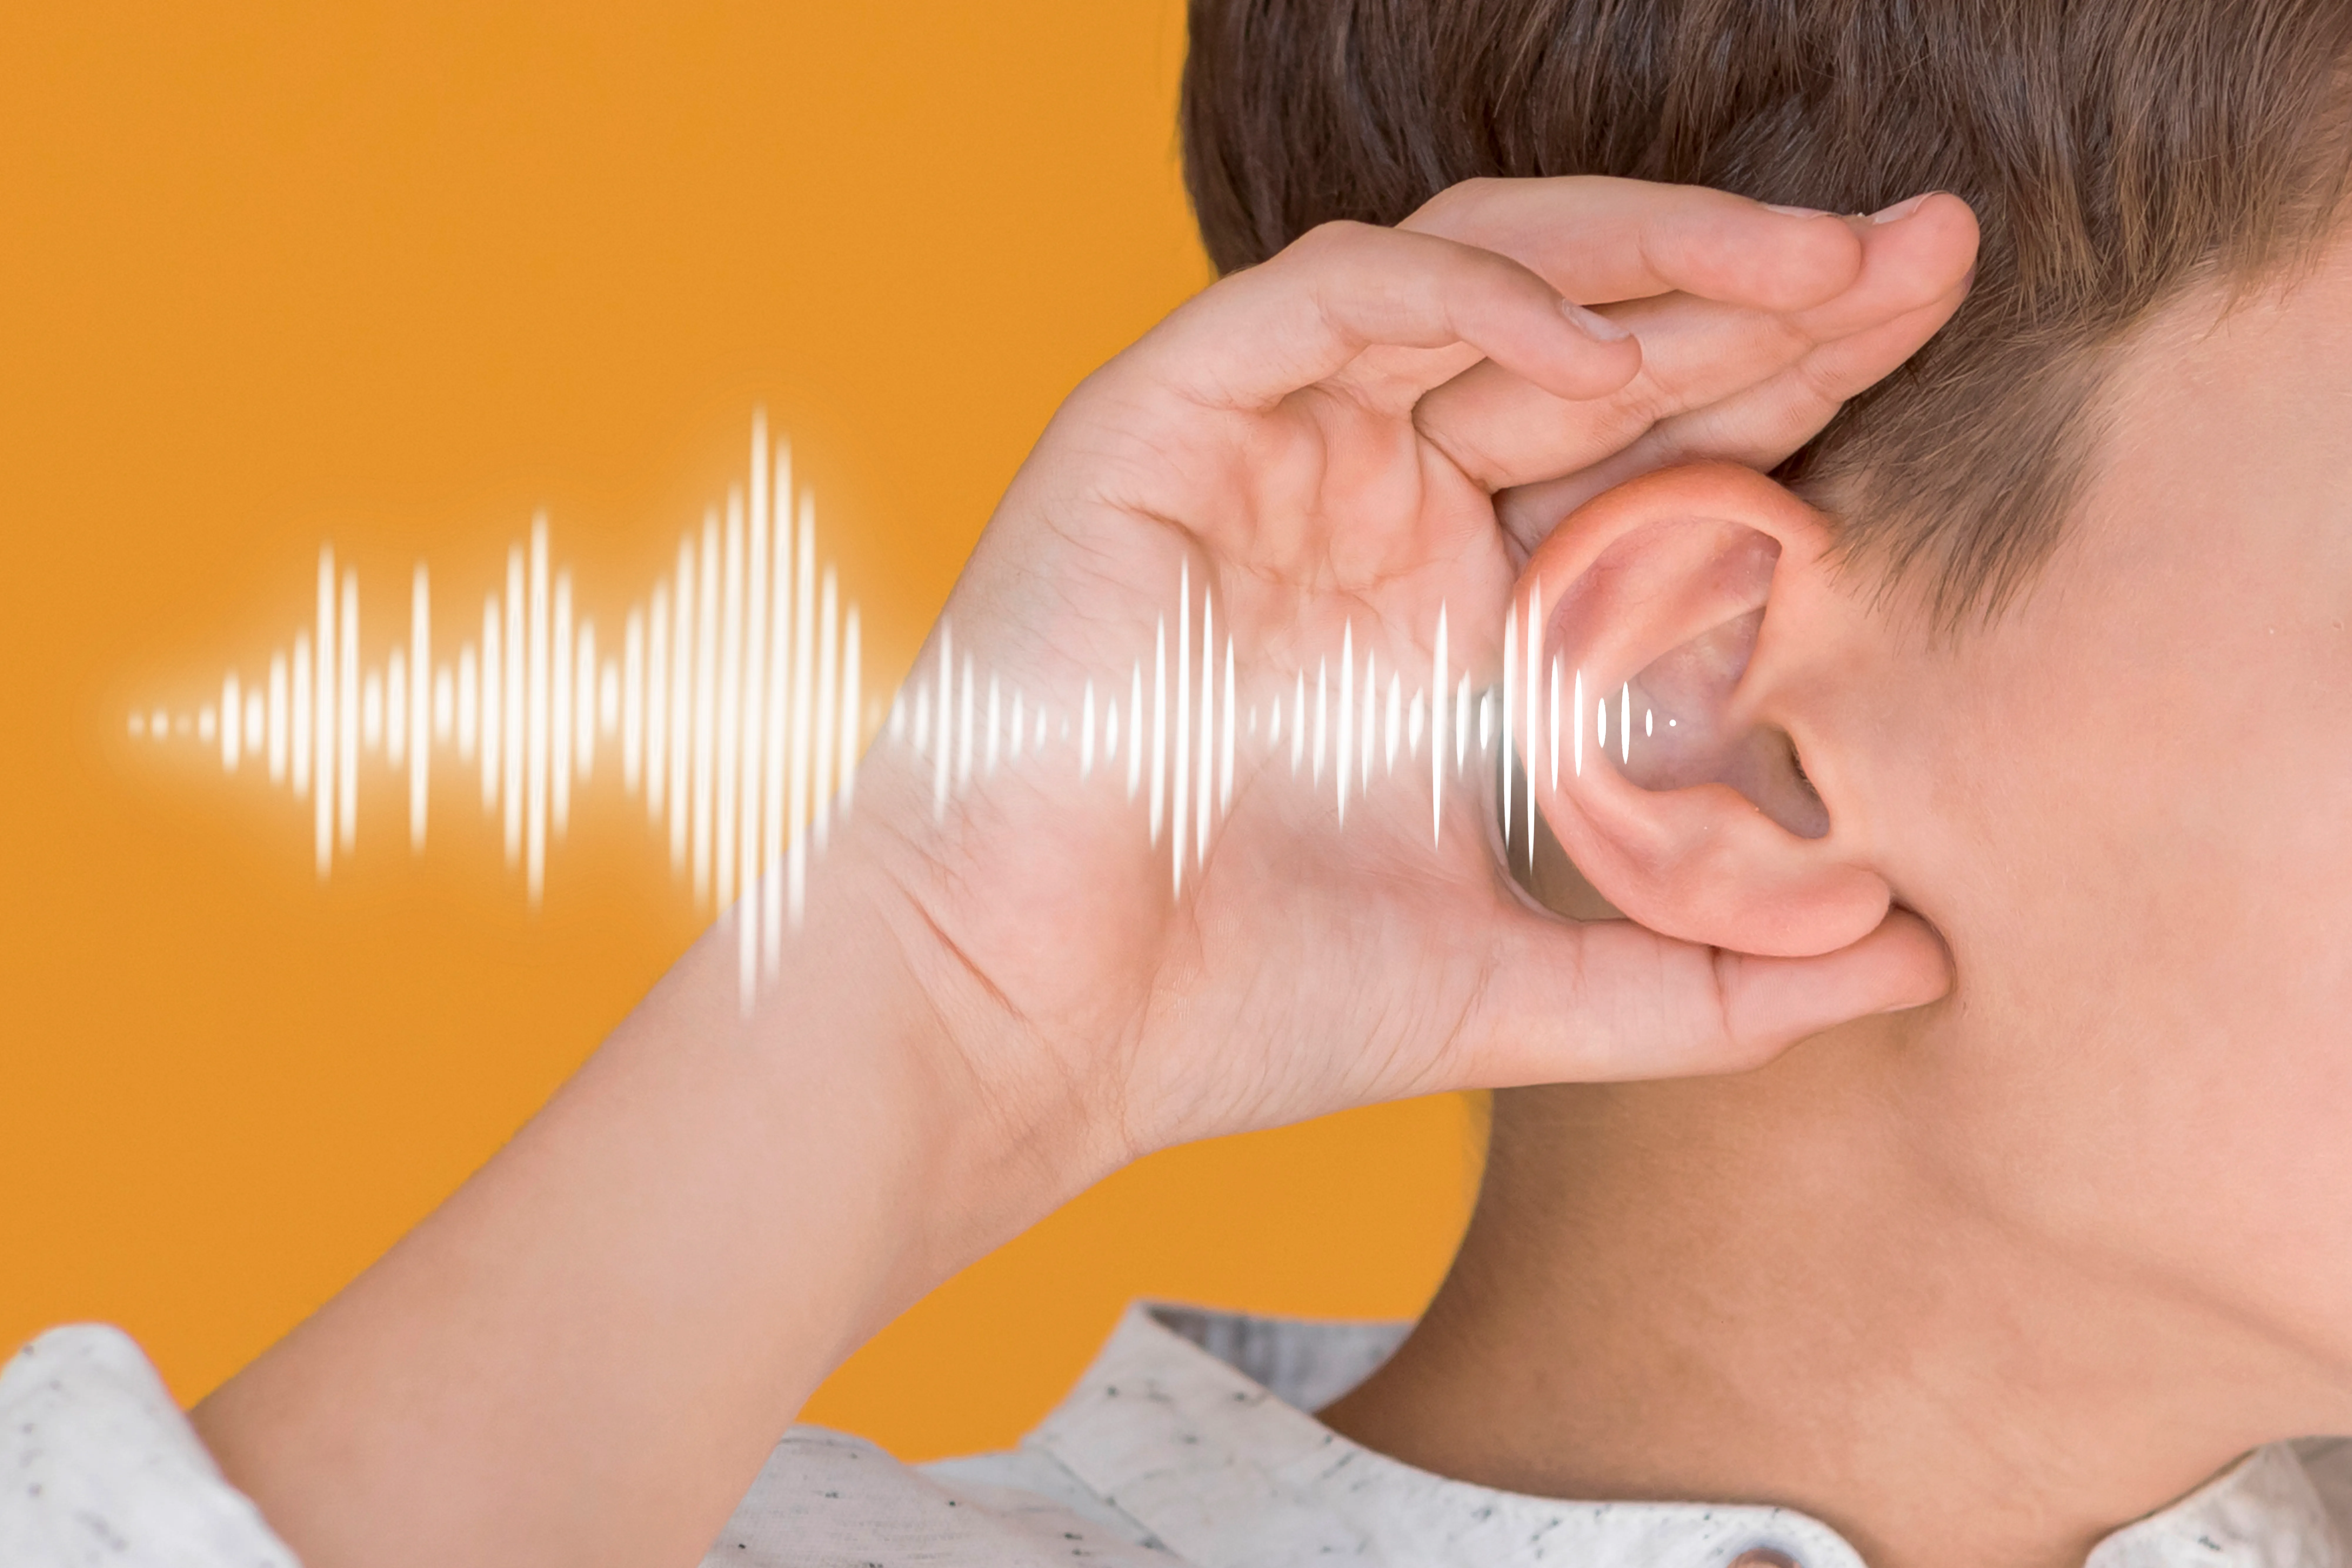 बच्चों में कान के संक्रमण के लिए बरती जाने वाली सावधानियां